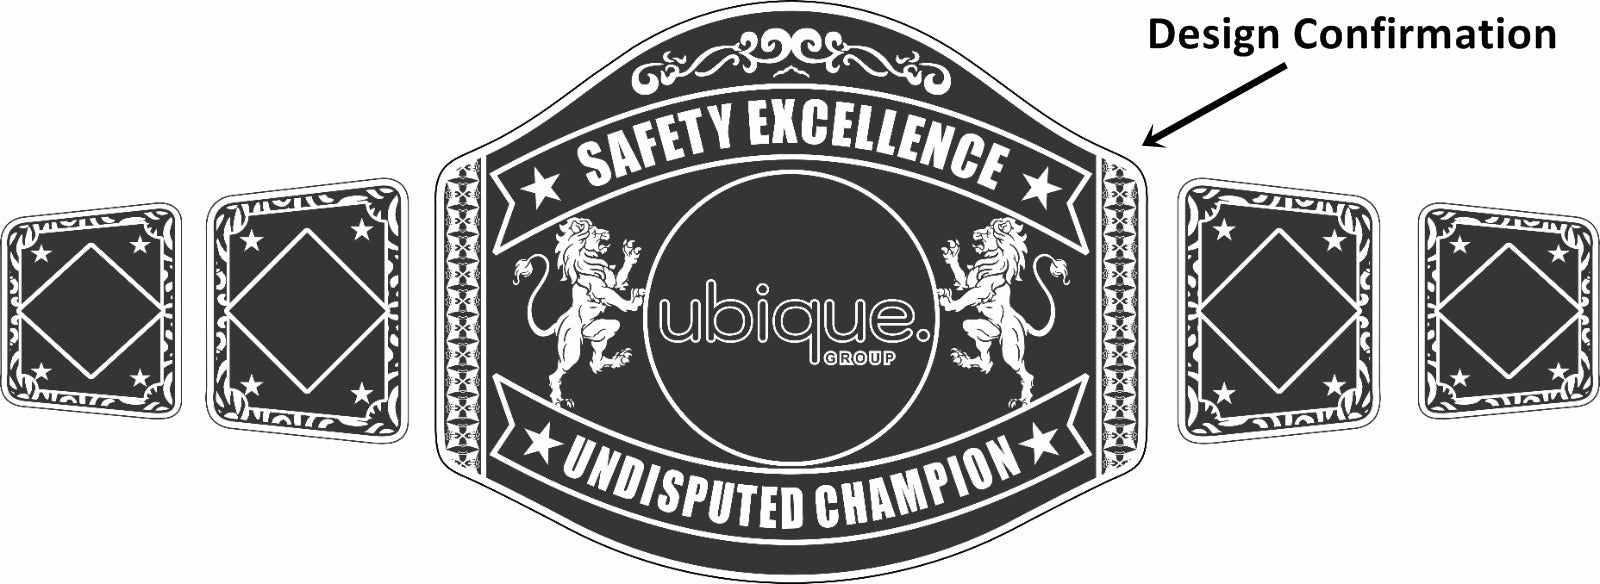 Custom Name and Ubique Group Logo Wrestling Championship Belt